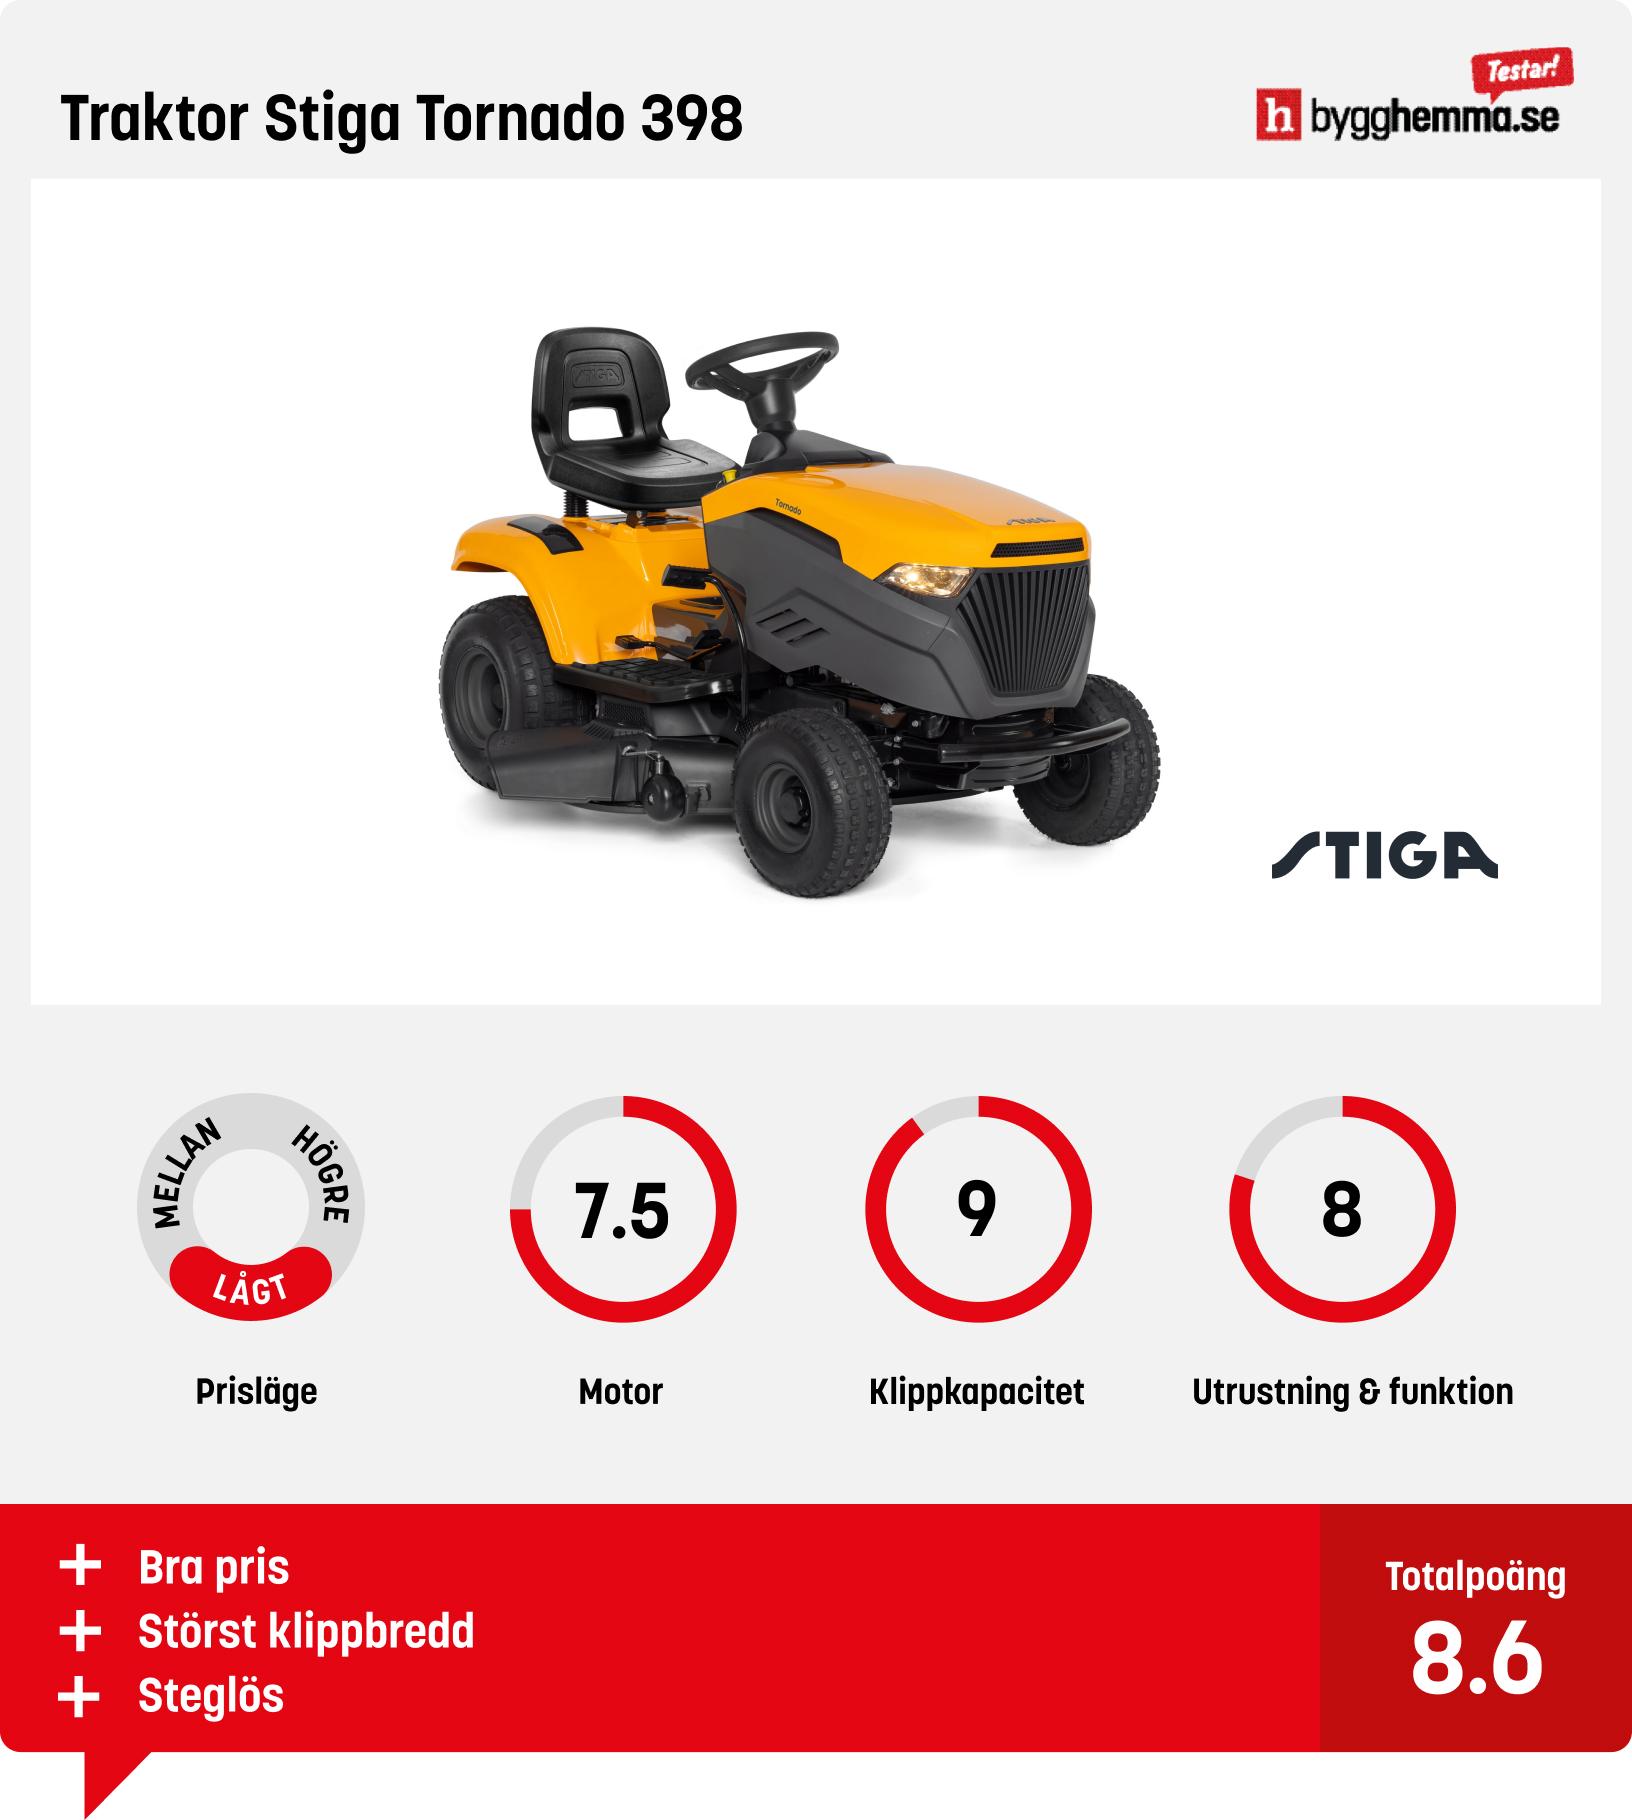 Trädgårdstraktor test - Traktor Stiga Tornado 398